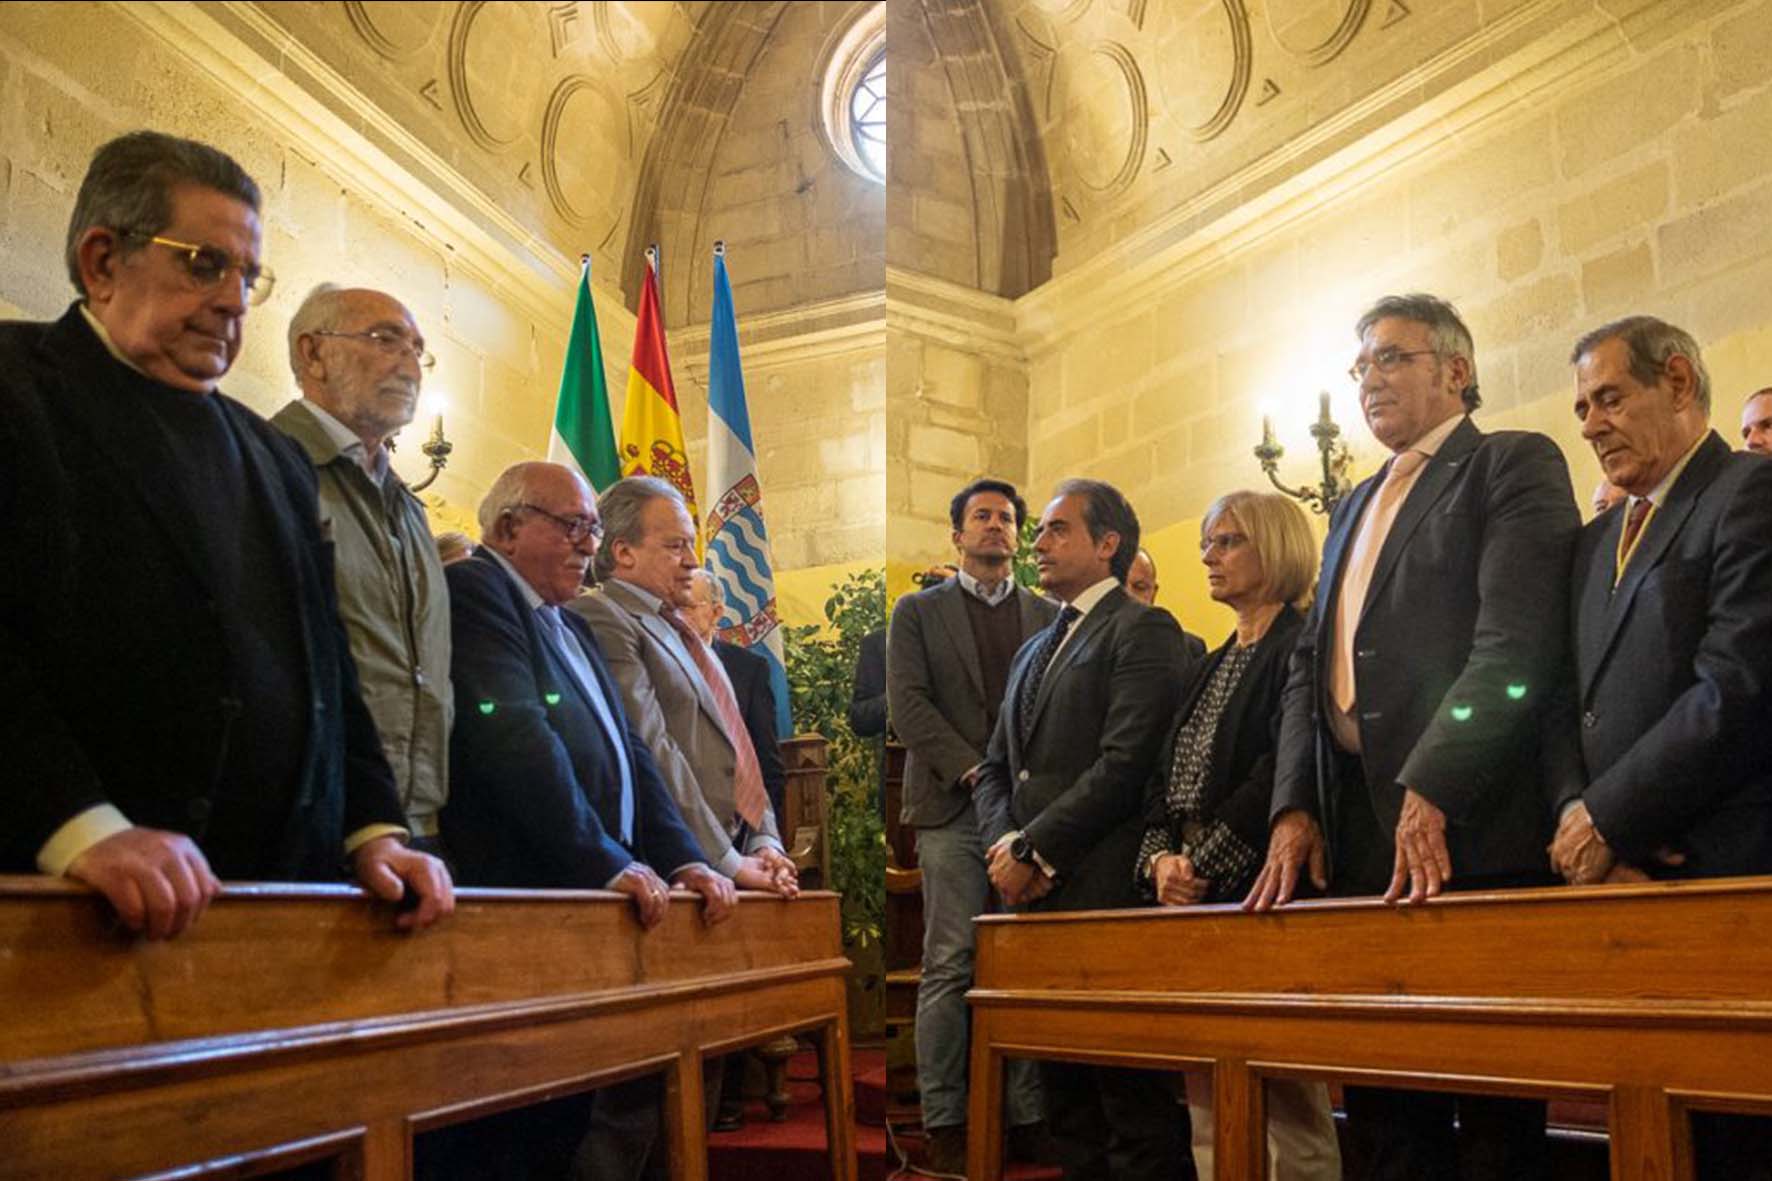 Pacheco frente a Saldaña, el año pasado, en el acto de homenaje a los alcaldes y ediles en el 40 aniversario de los ayuntamientos democráticos. FOTOS: MANU GARCÍA